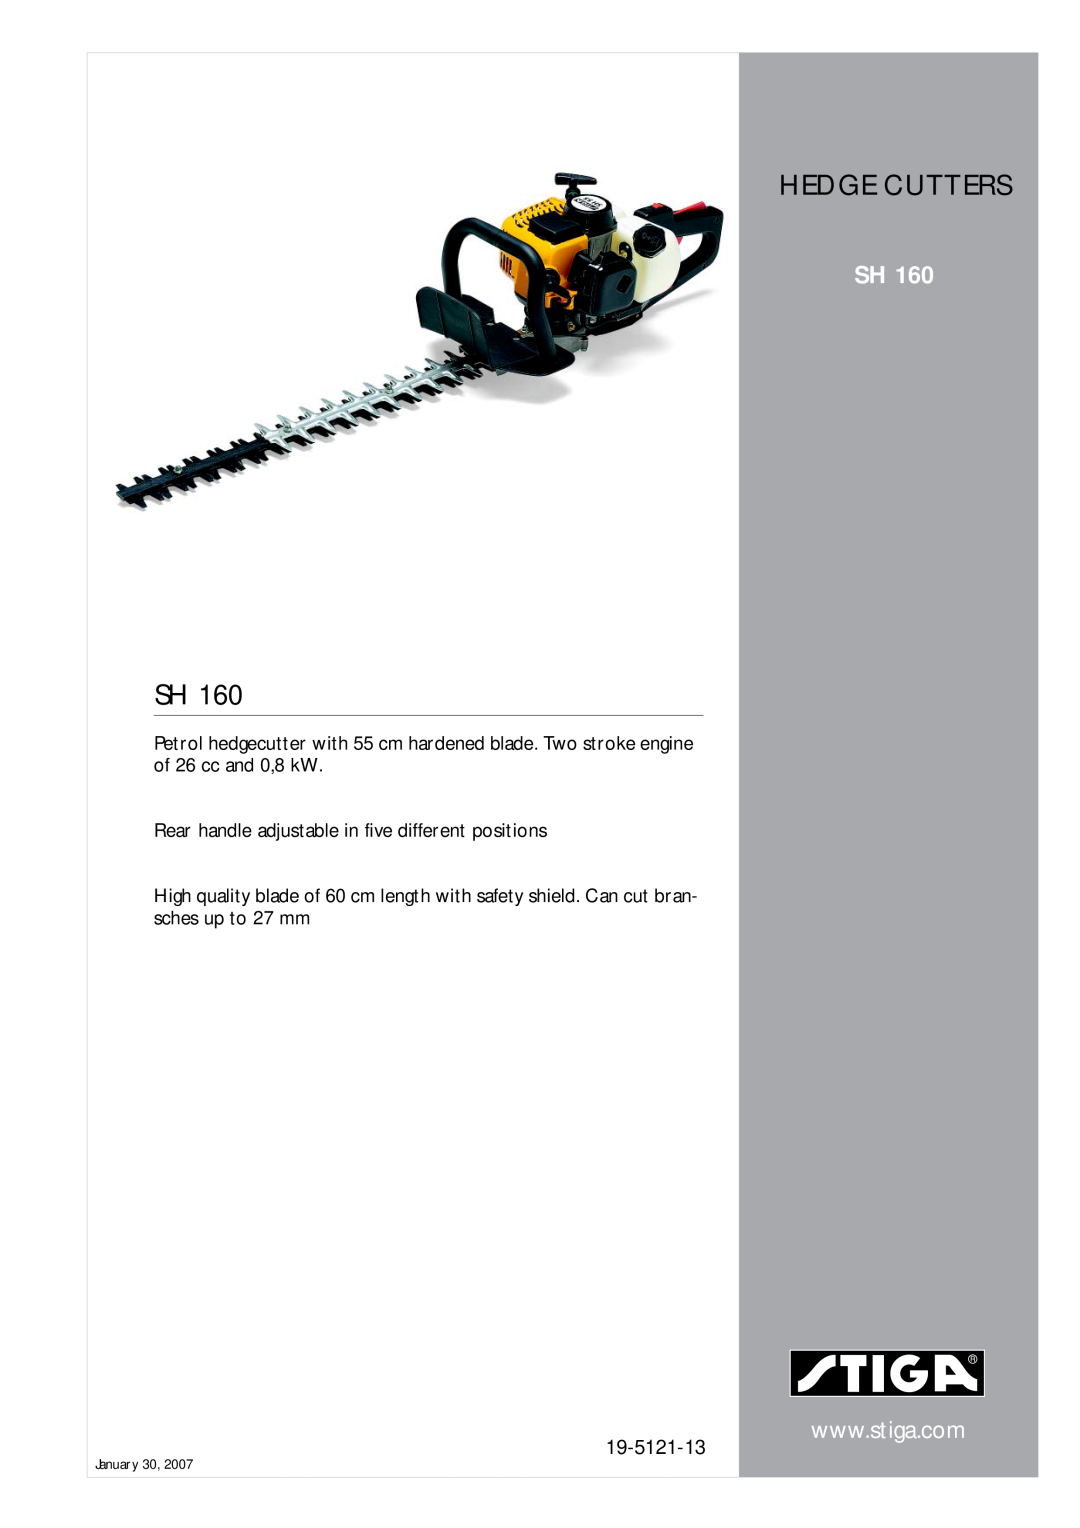 Stiga SH 160 manual Hedge Cutters, 19-5121-13 